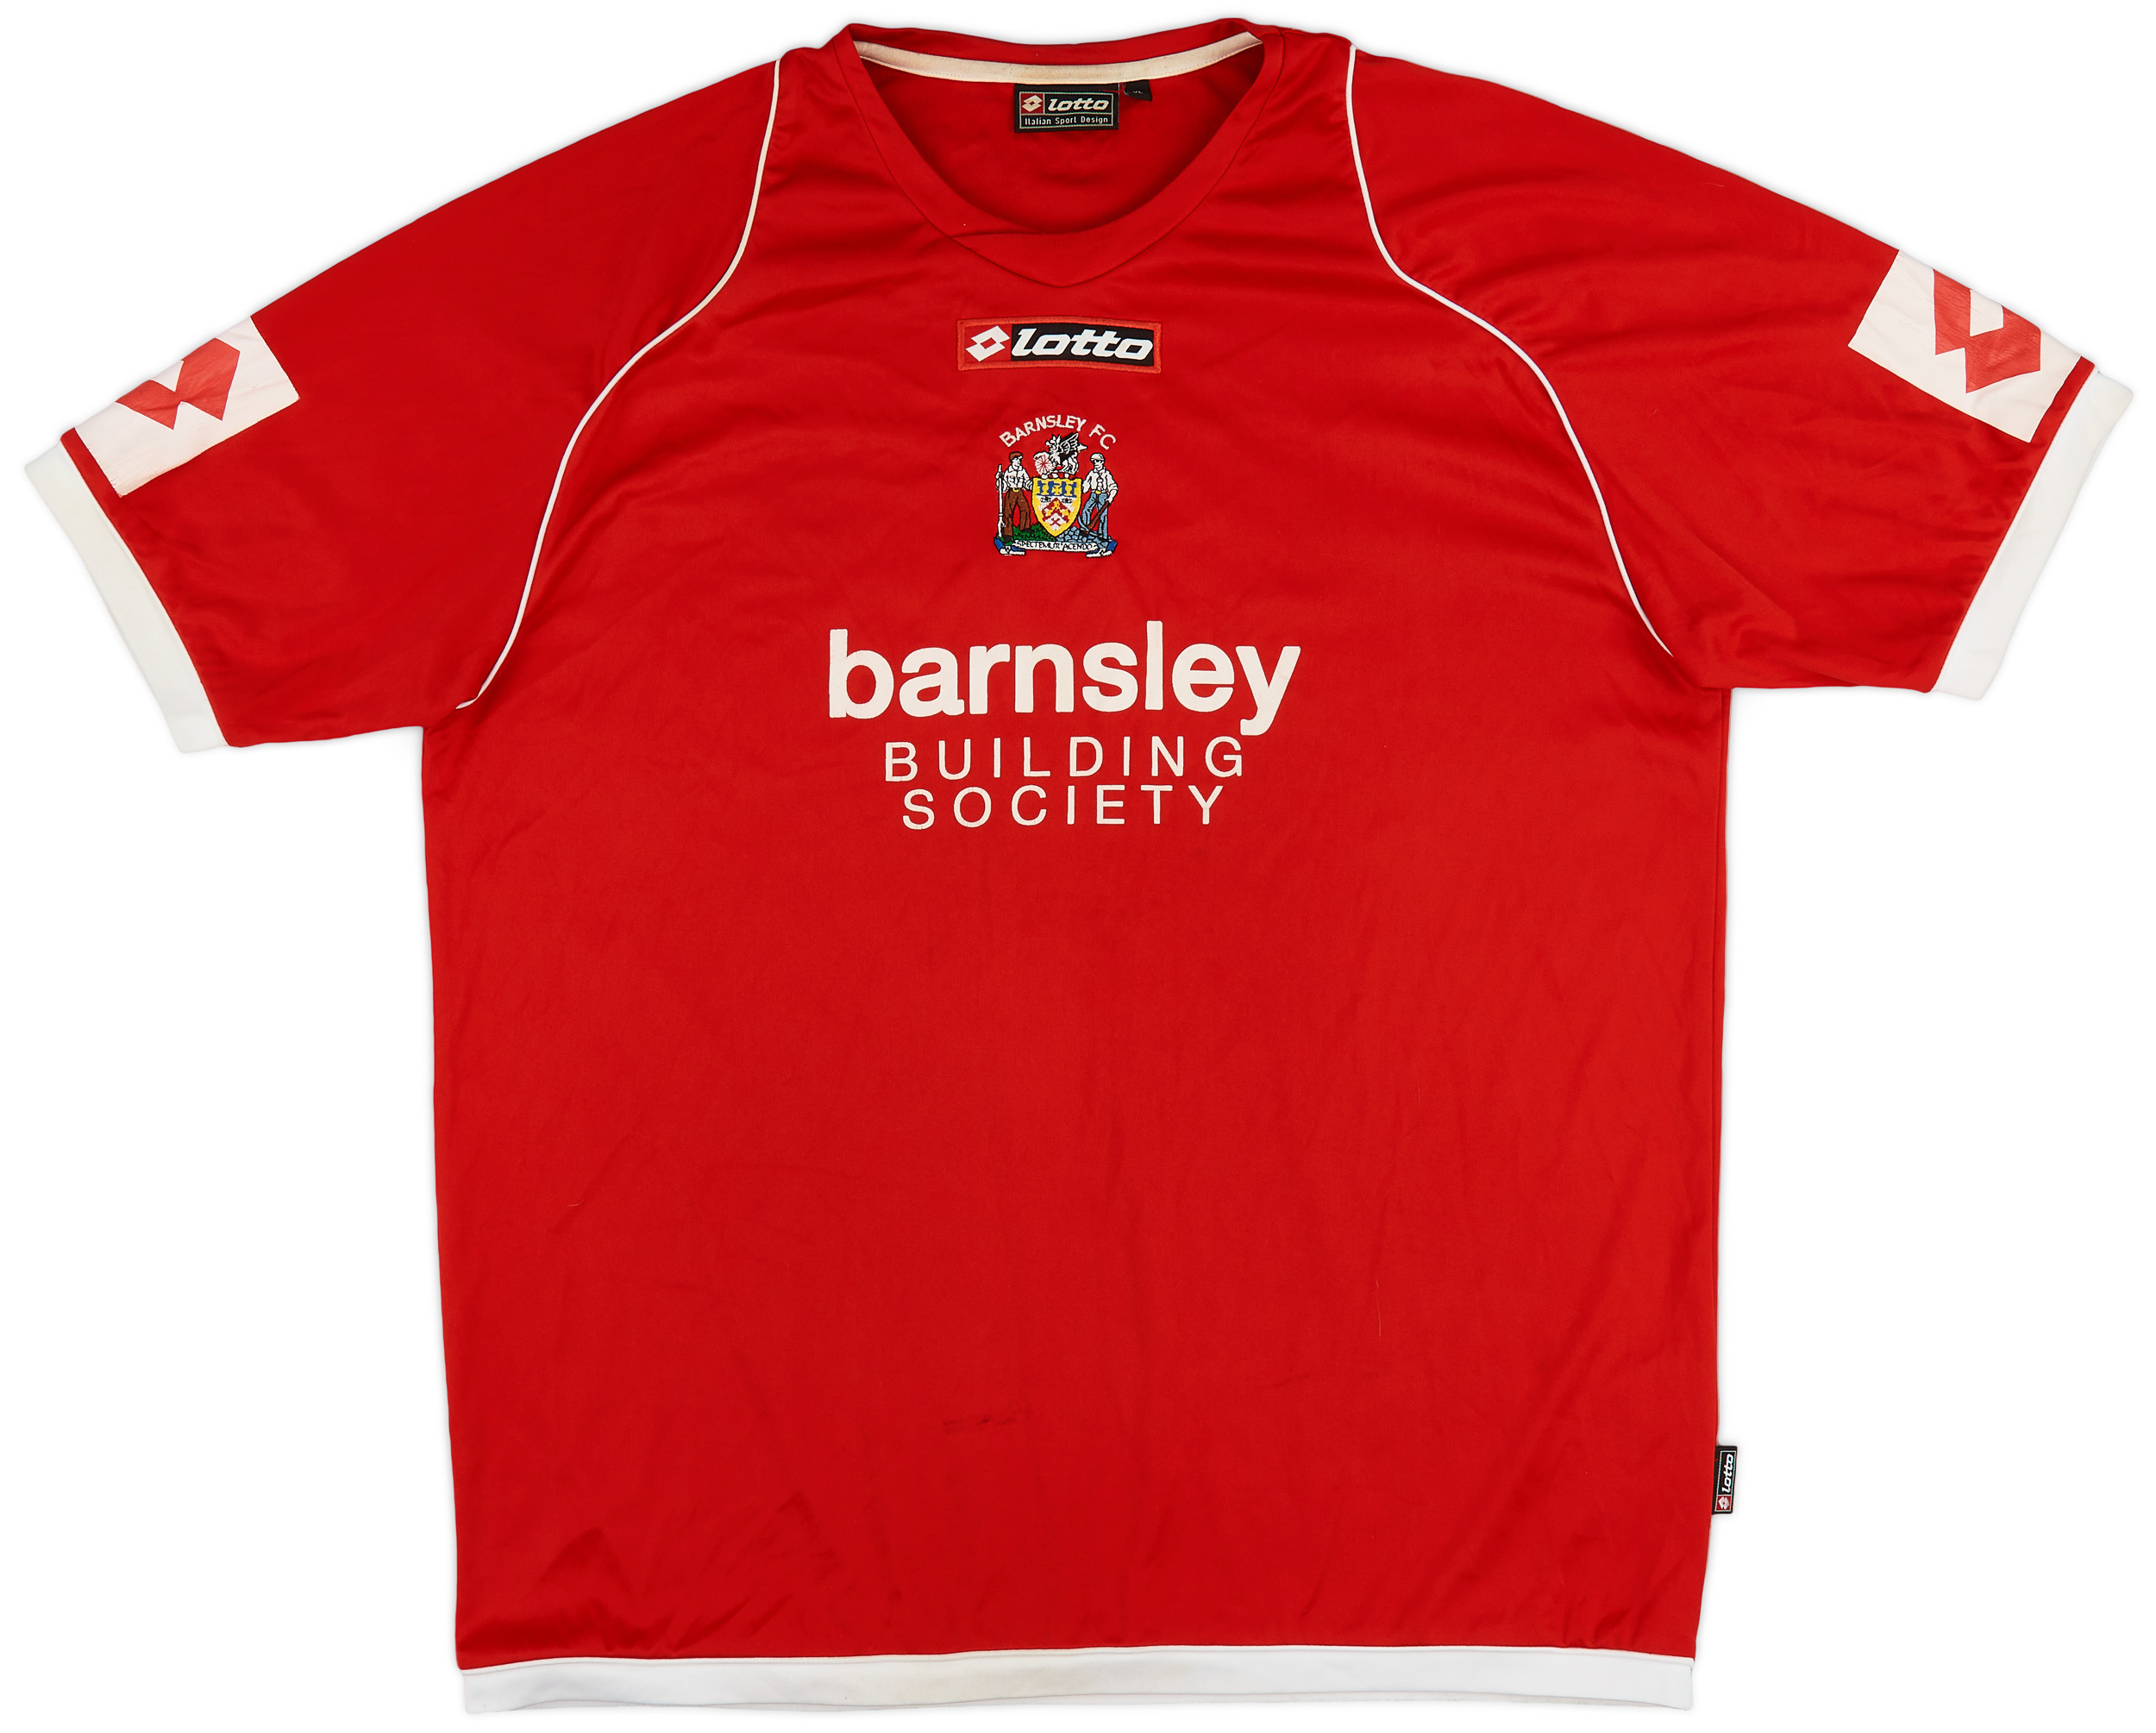 2009-10 Barnsley Home Shirt - 6/10 - ()